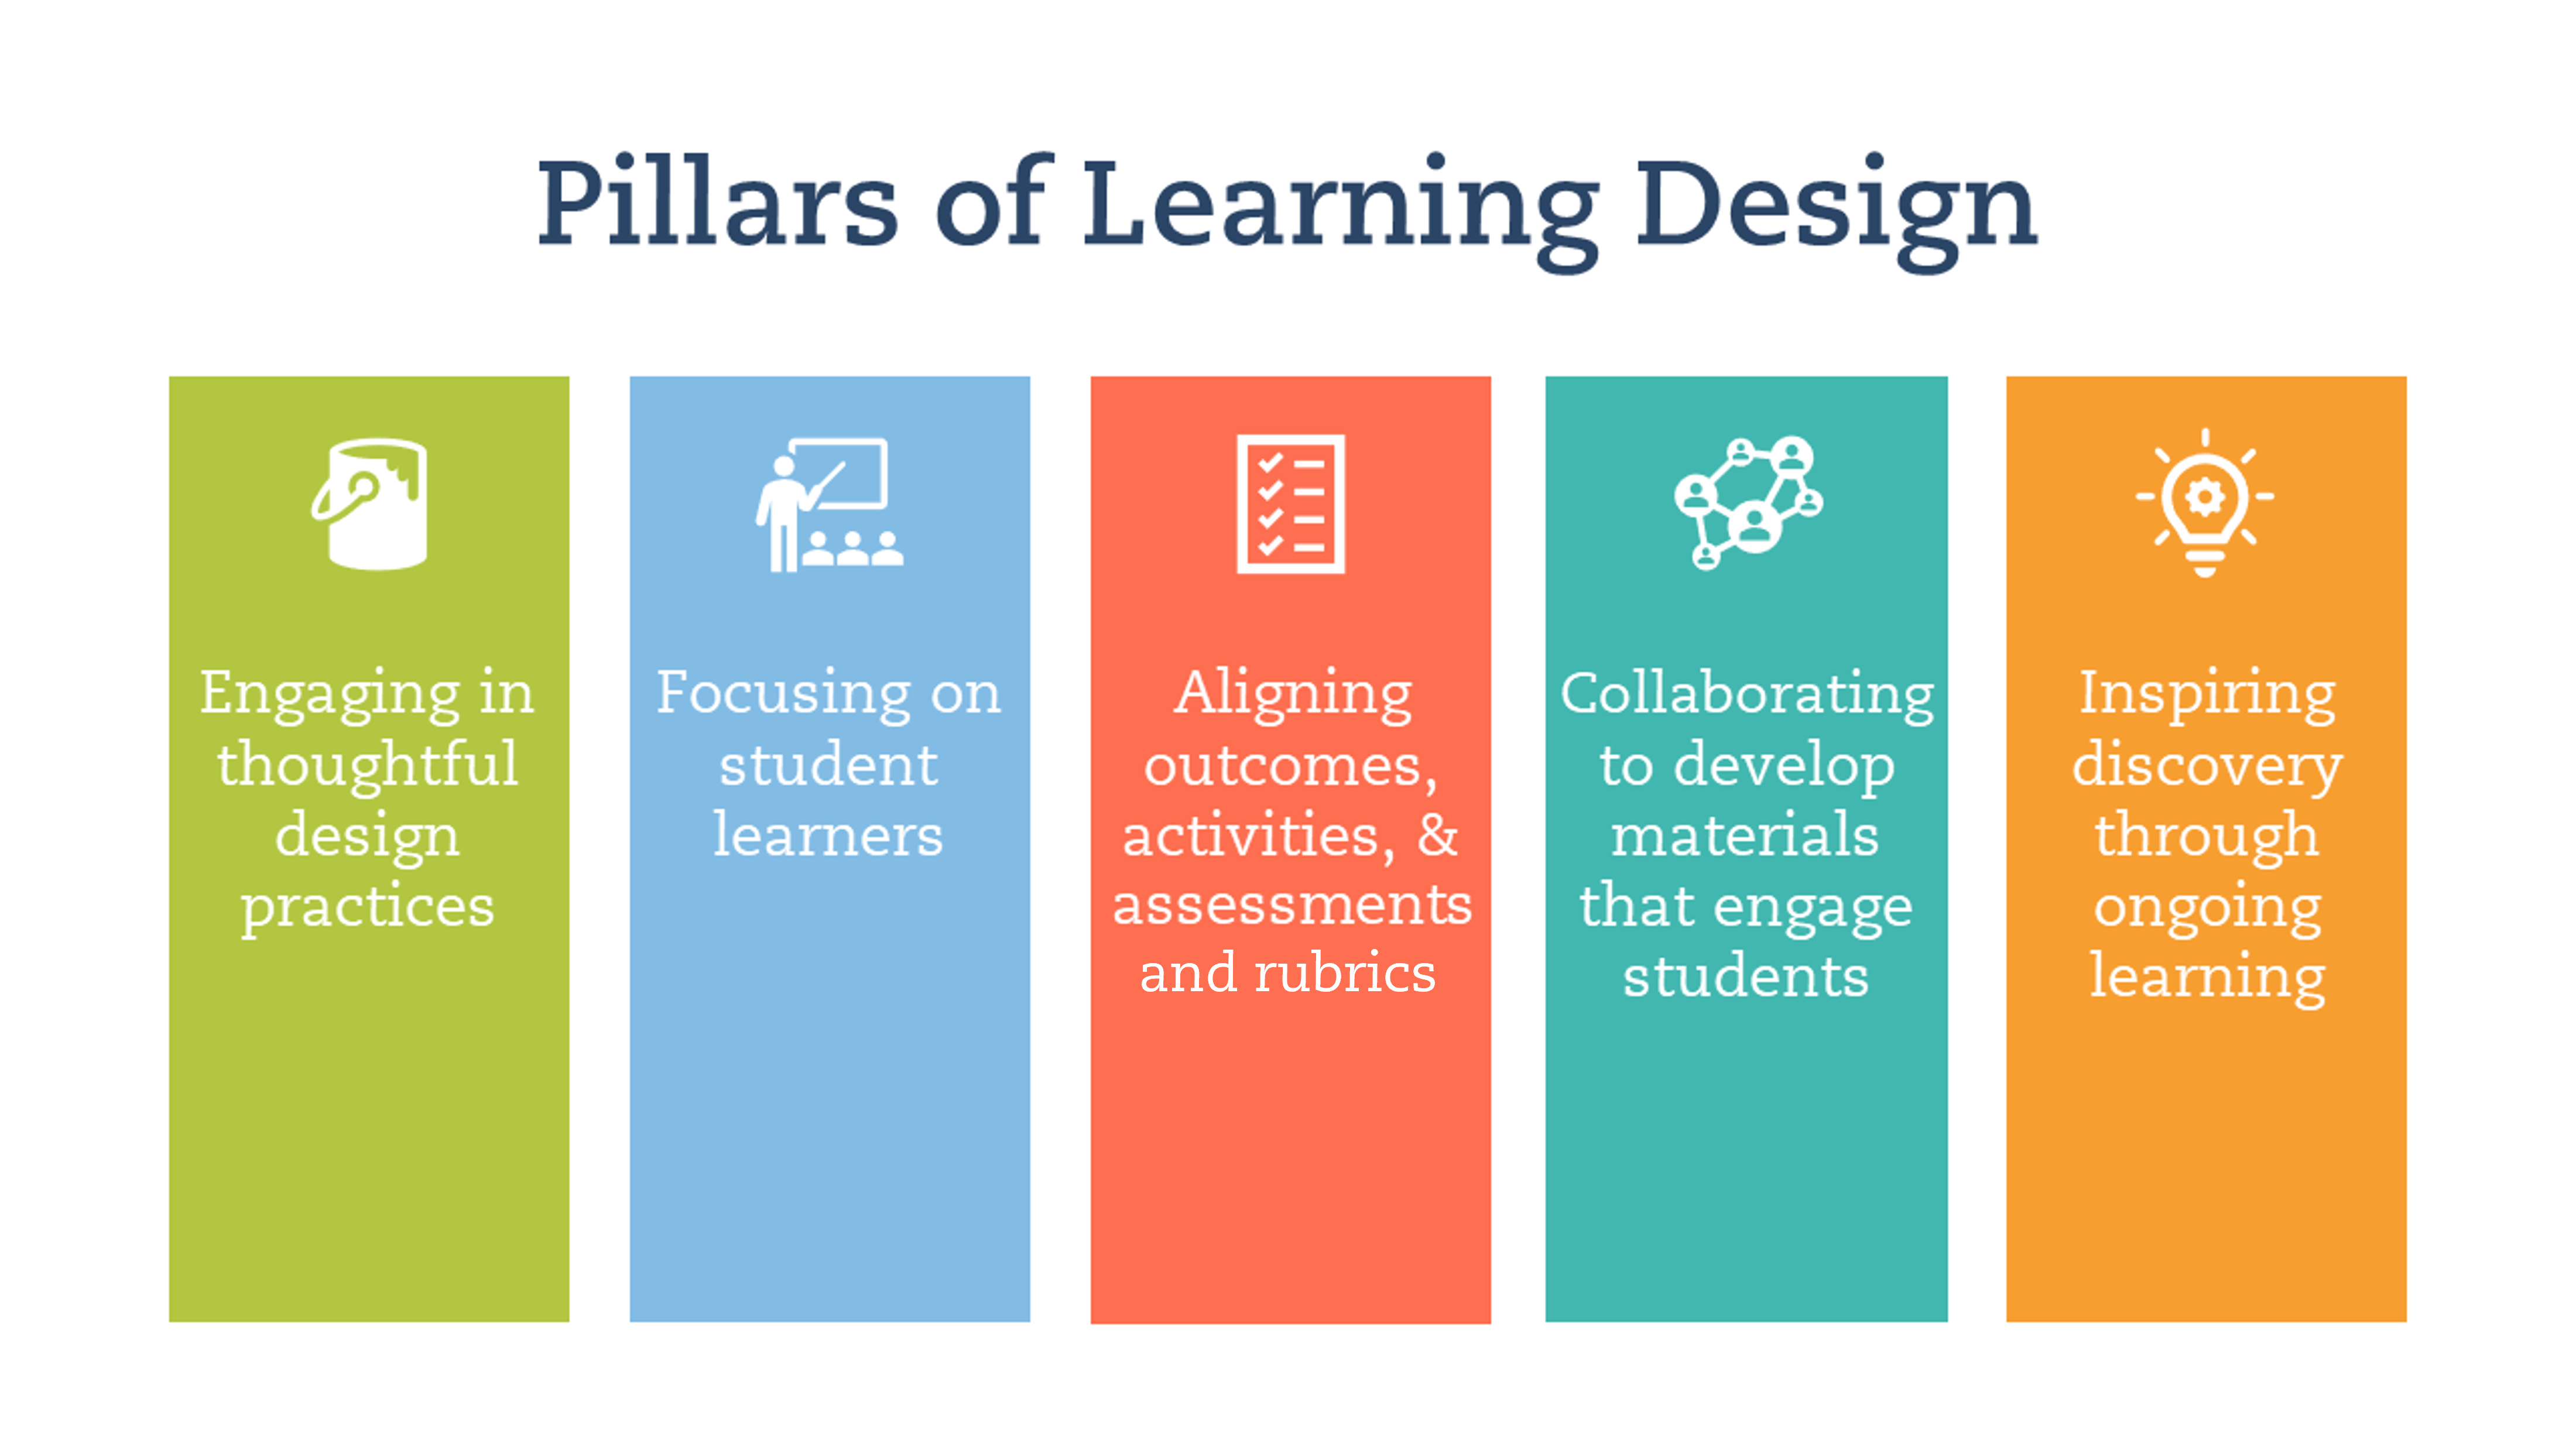 Learning Design pillars